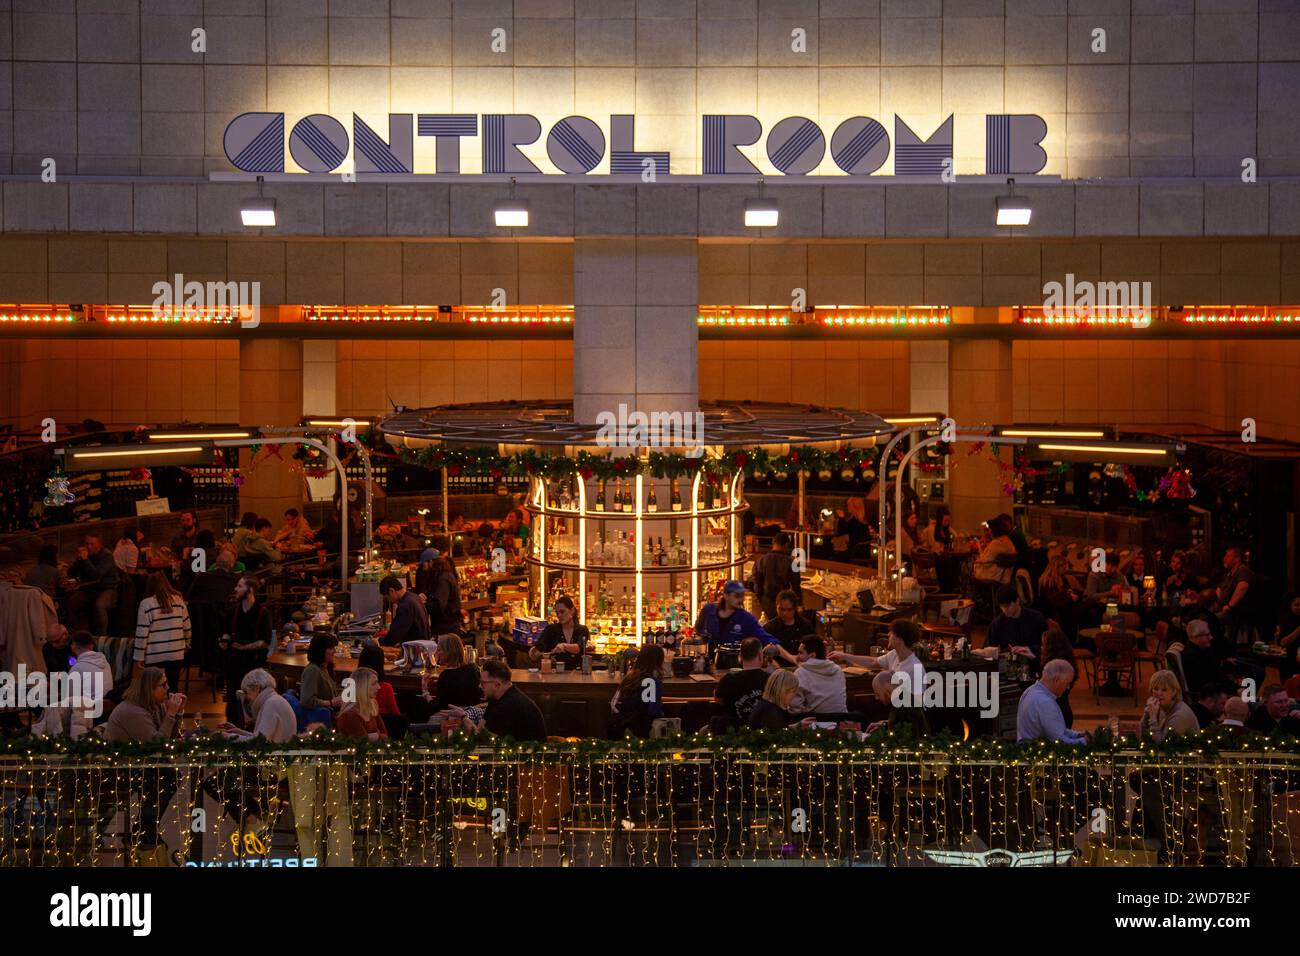 Control Room Restaurant in Batteresa Power Station in London UK Stock Photo